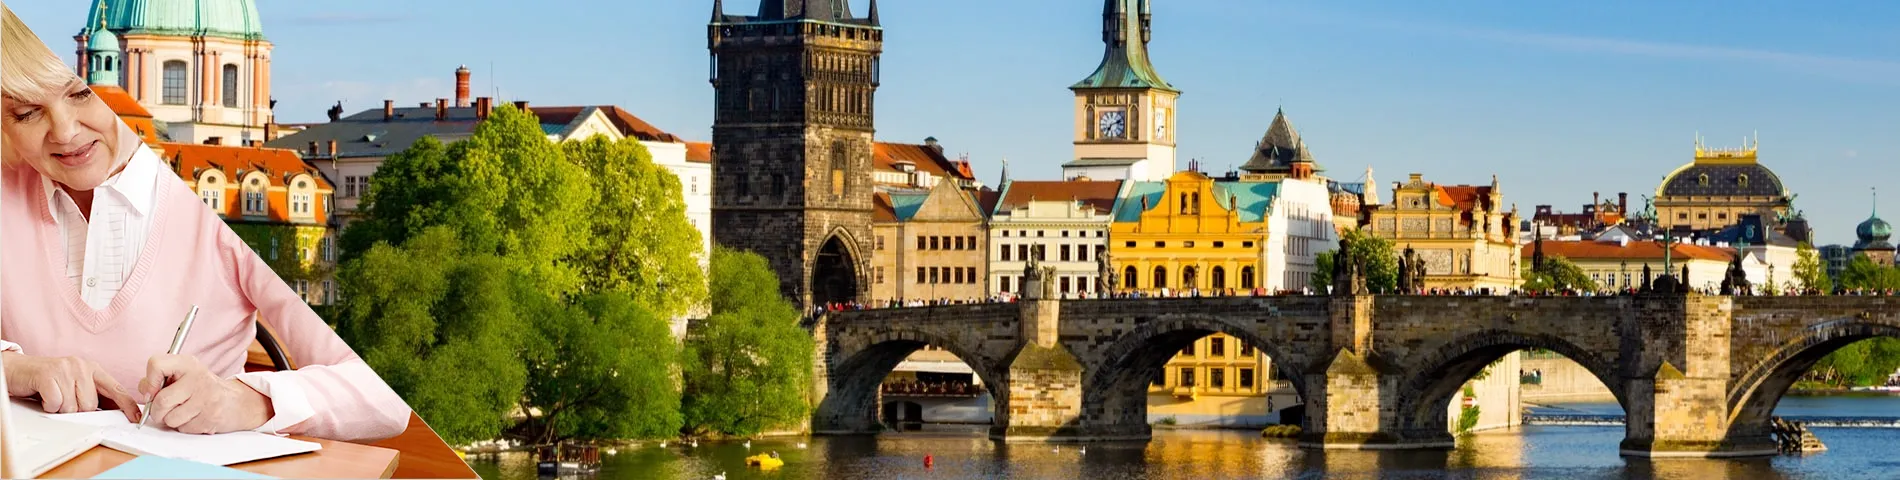 Прага - Для старшего возраста (50 плюс)